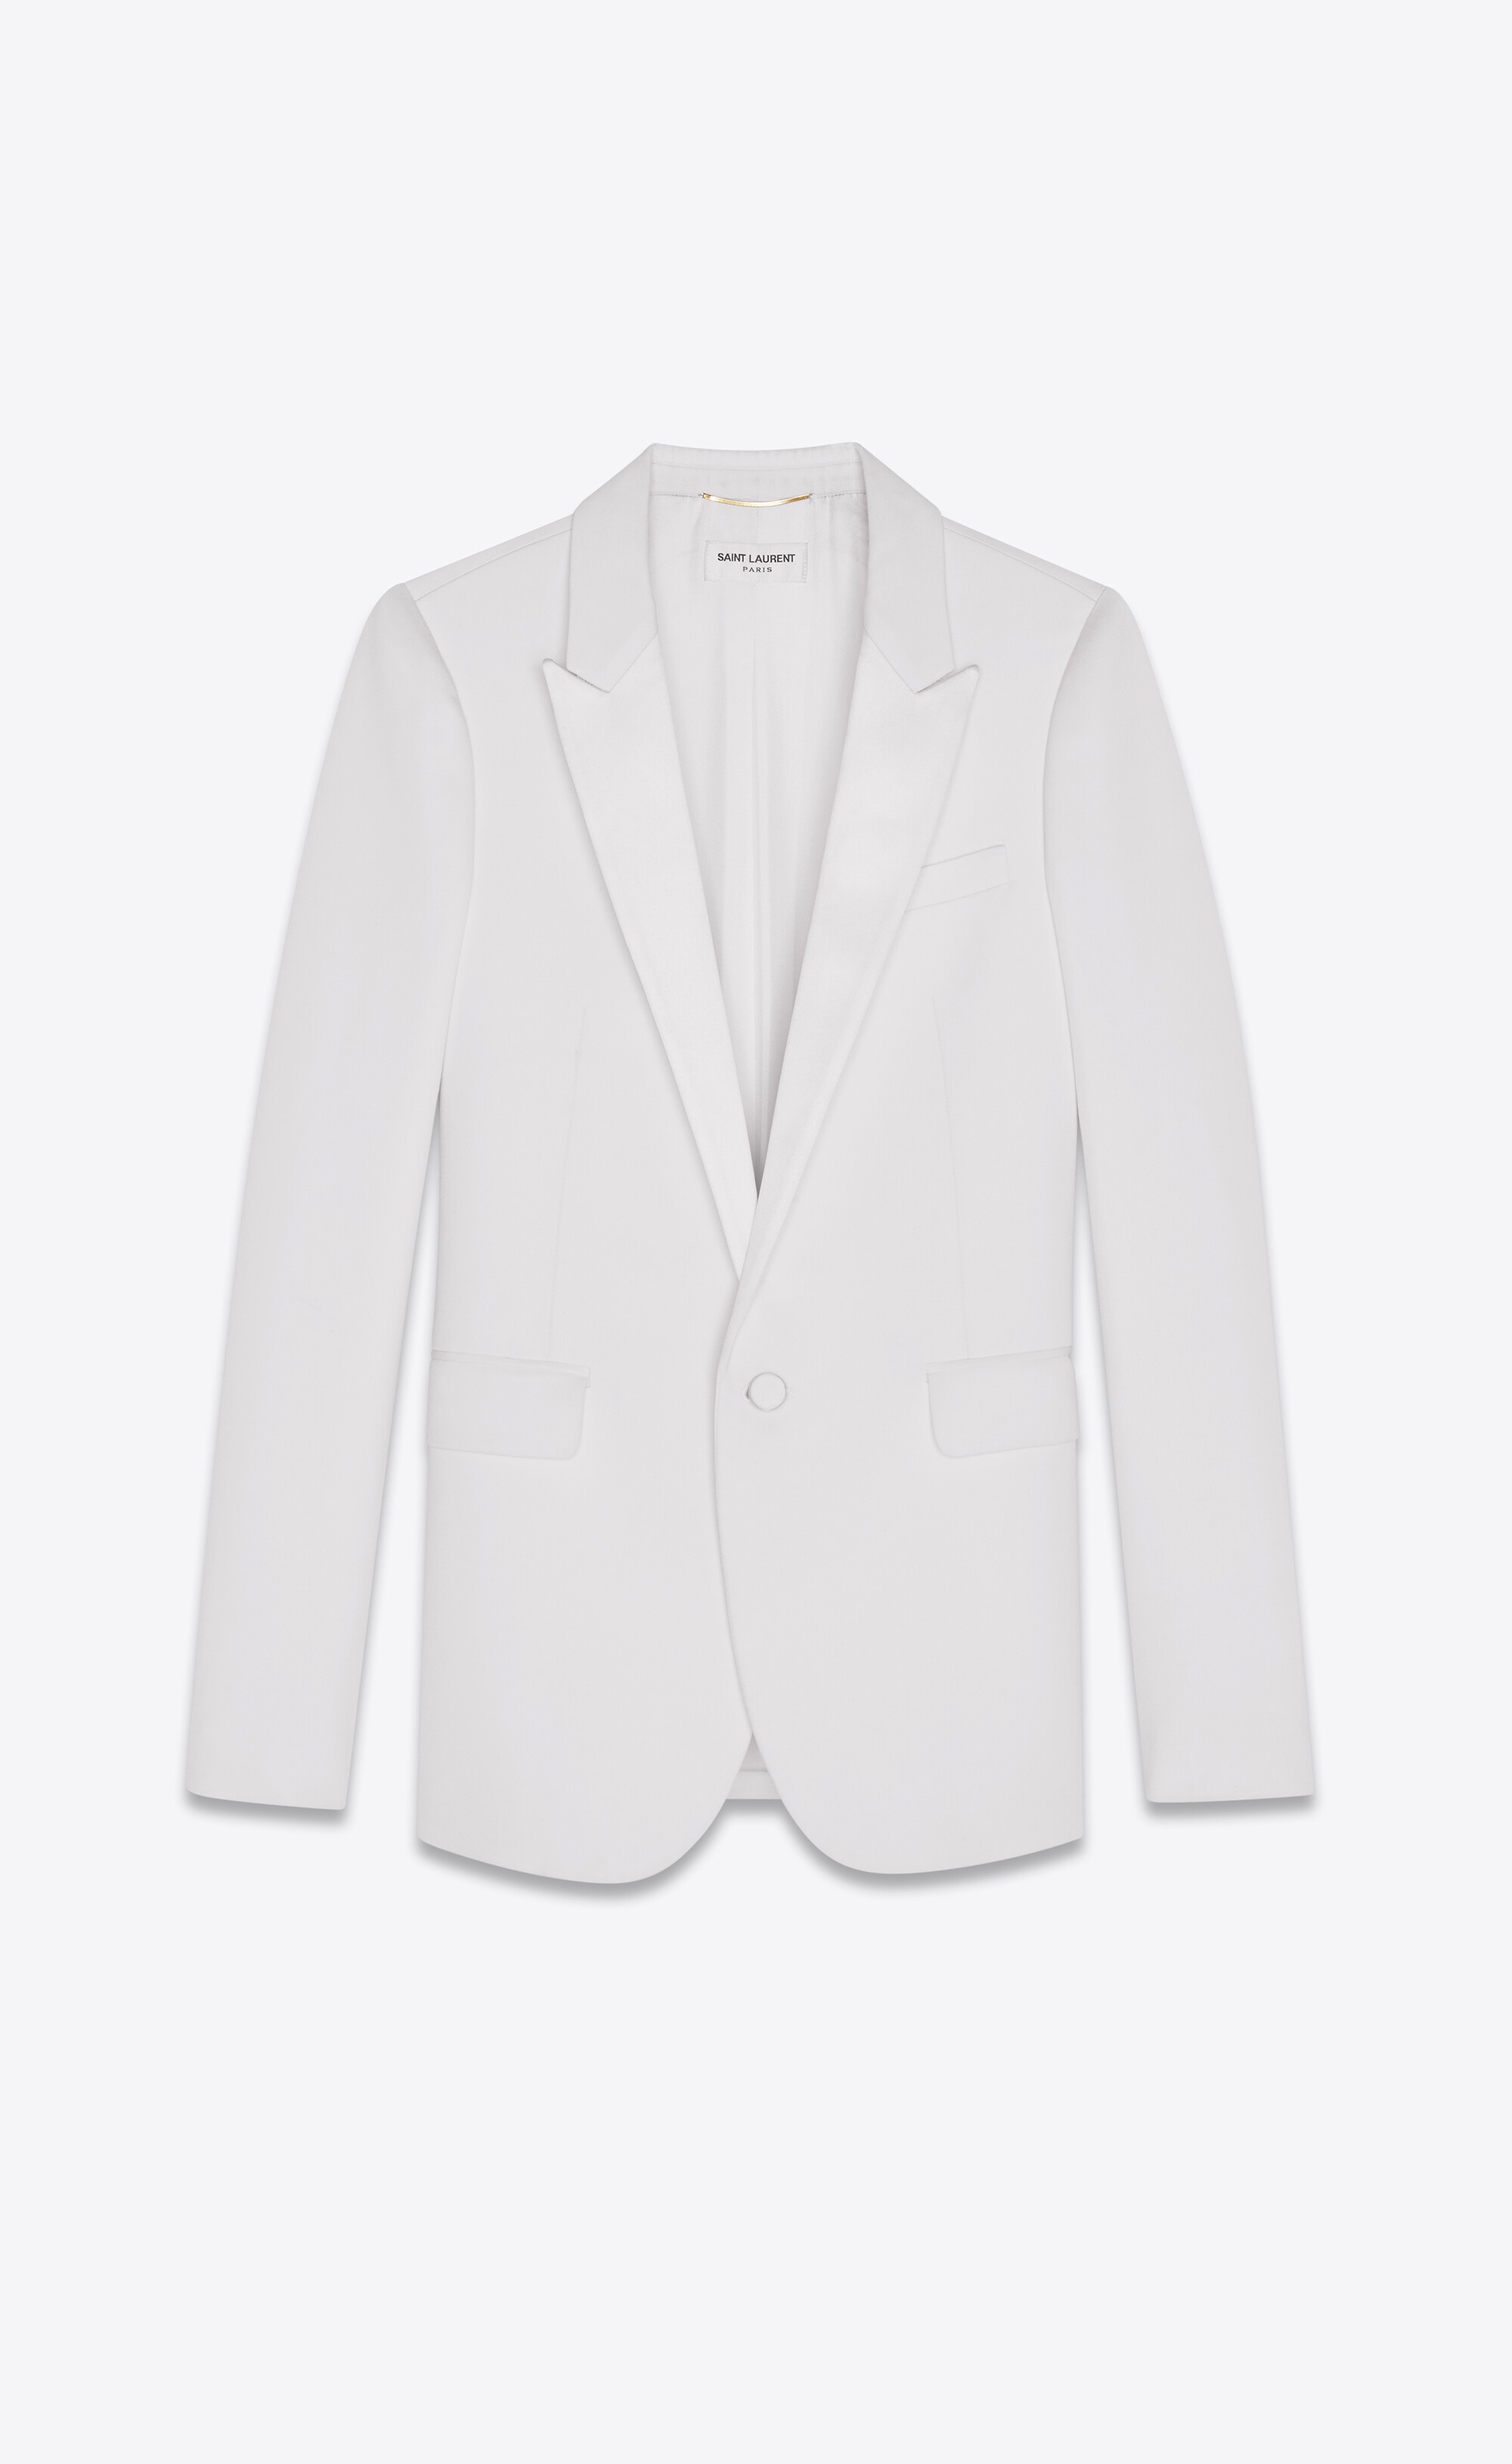 notched collar tuxedo jacket in grain de poudre saint laurent - 1